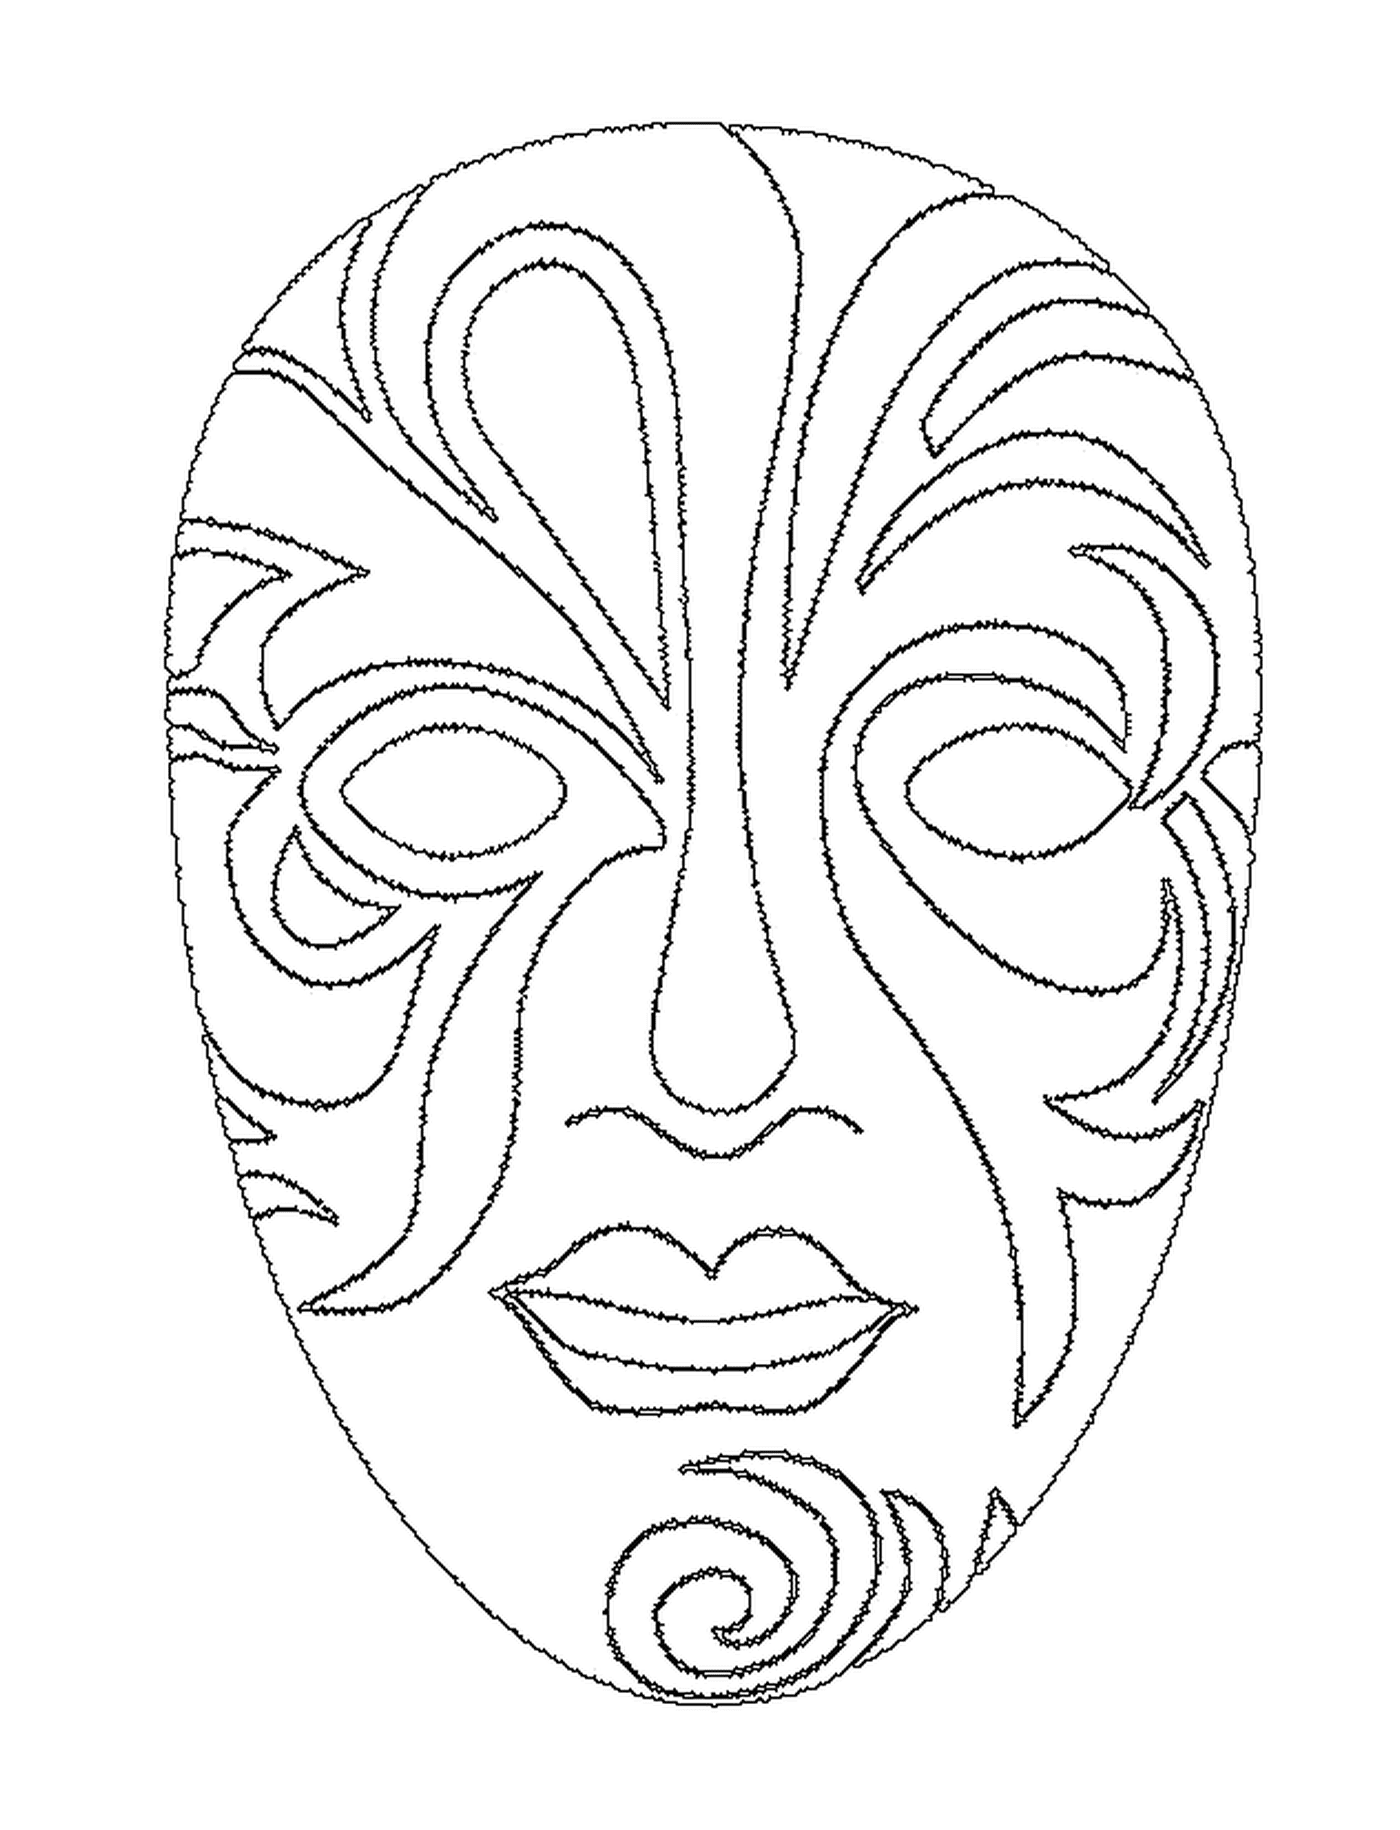  Uma bela máscara facial para o carnaval 